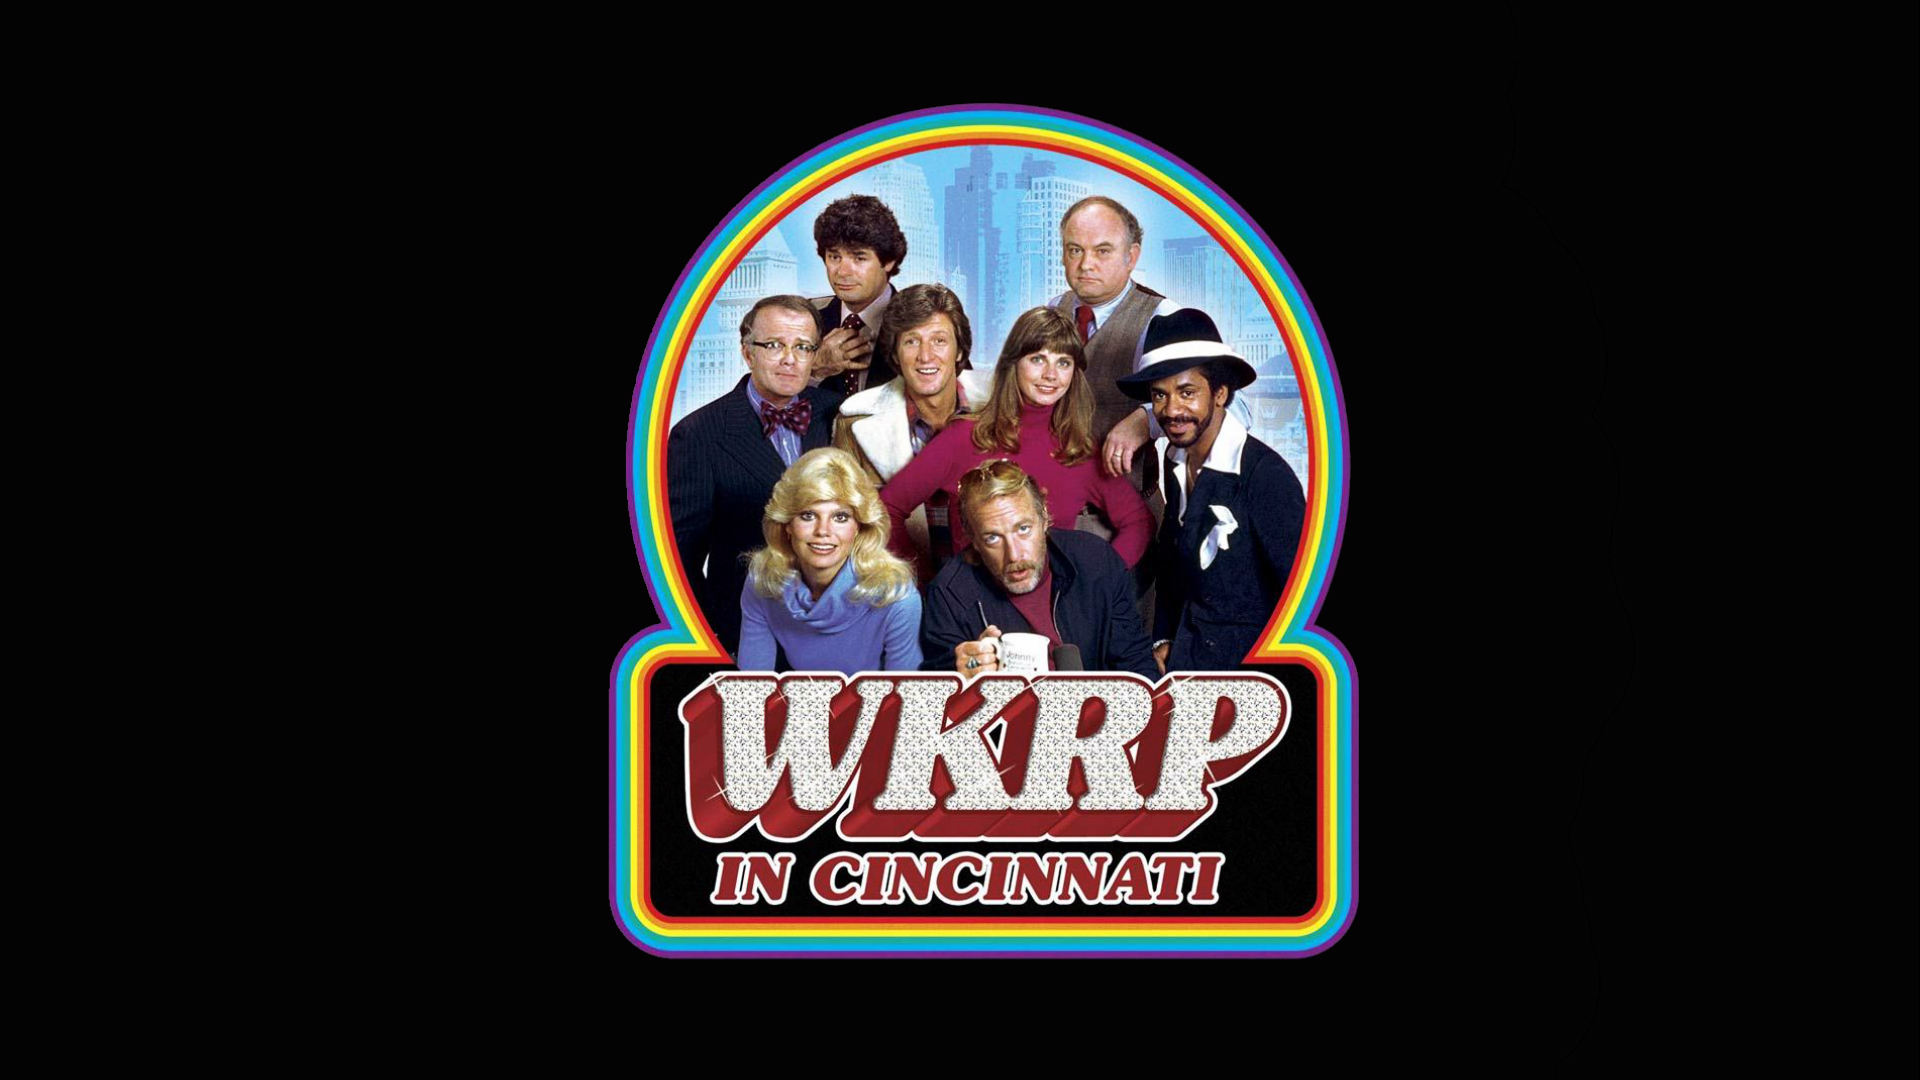 TV Show WKRP in Cincinnati HD Wallpaper | Background Image